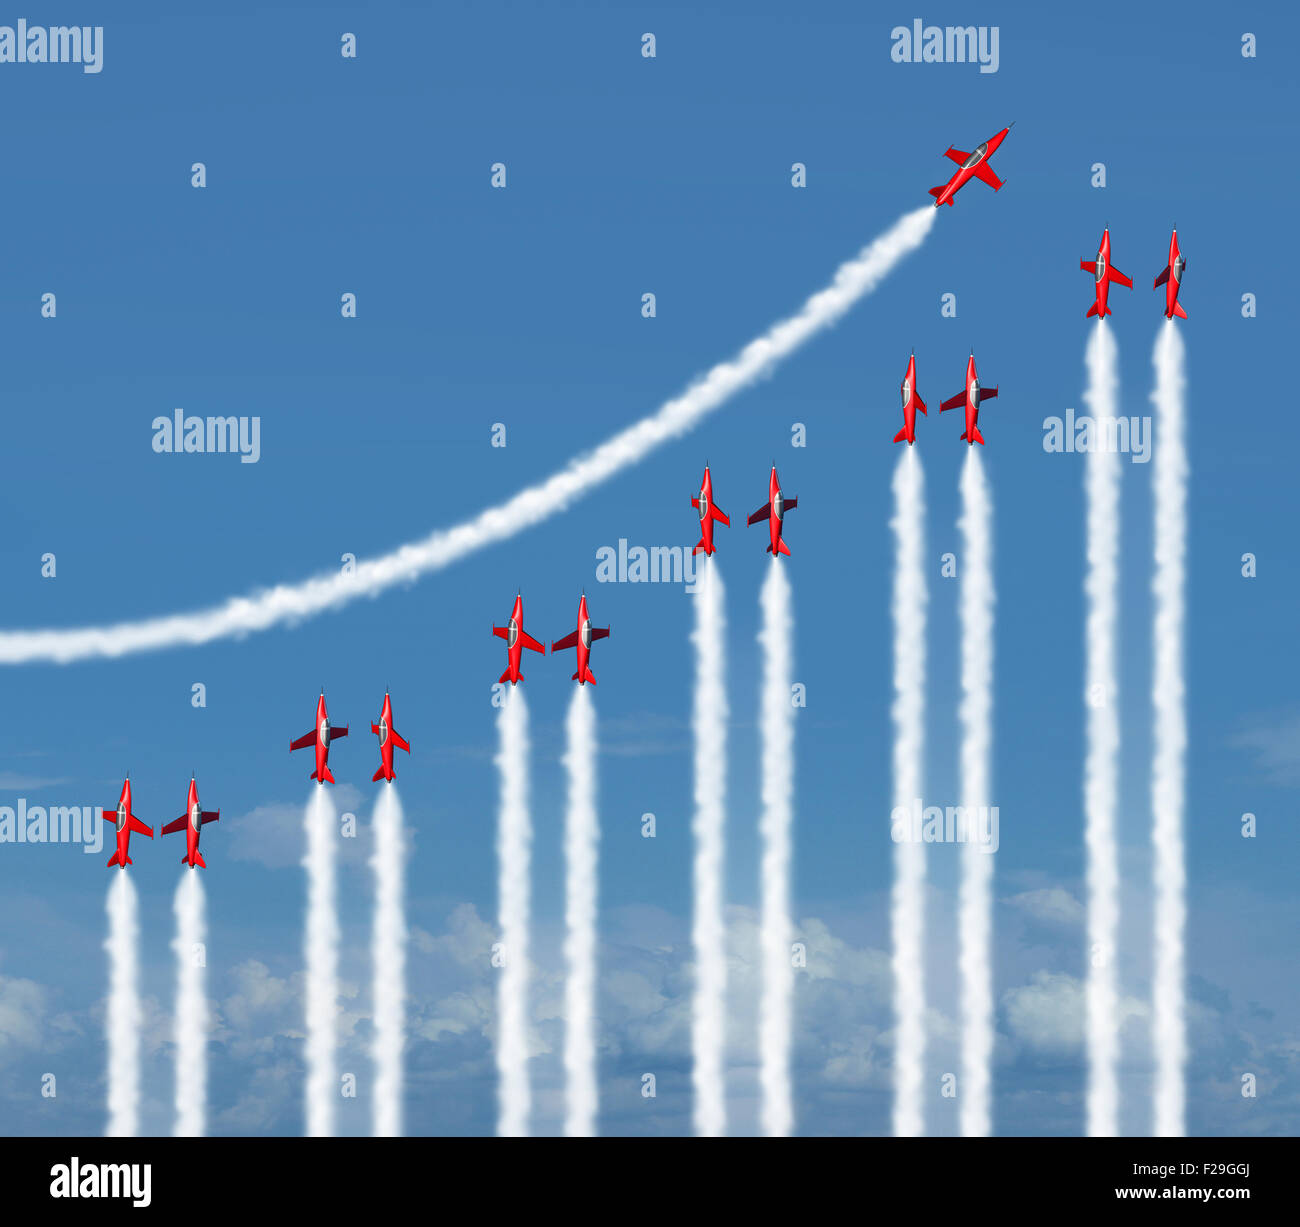 Concepto de diagrama gráfico de negocio como un grupo de aviones acrobáticos vuelan con estelas de humo en forma de un icono de infografía financiera aumento de riqueza y éxito. Foto de stock